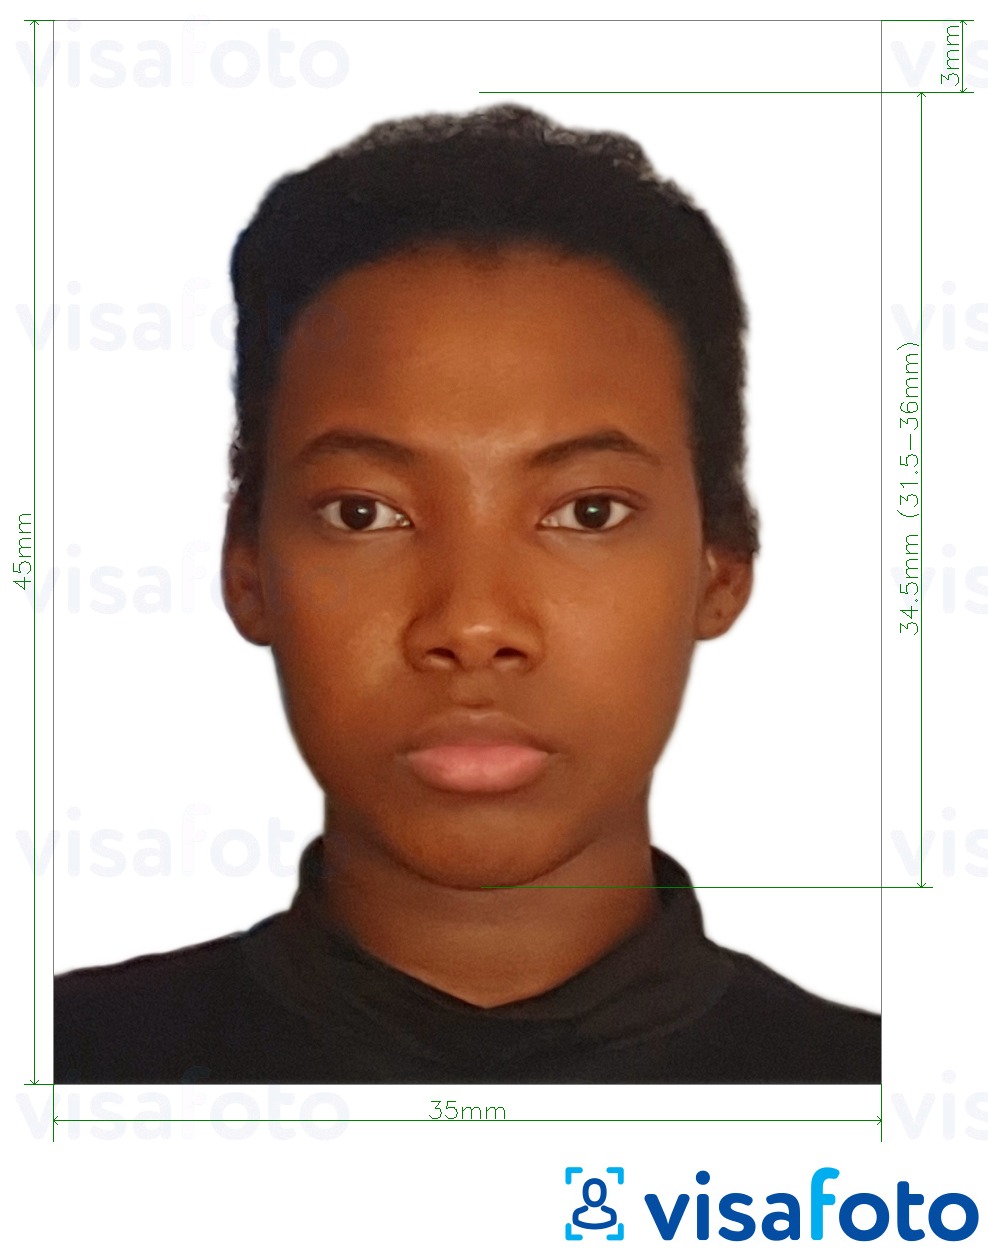 Madagascar e-visa photo parameters